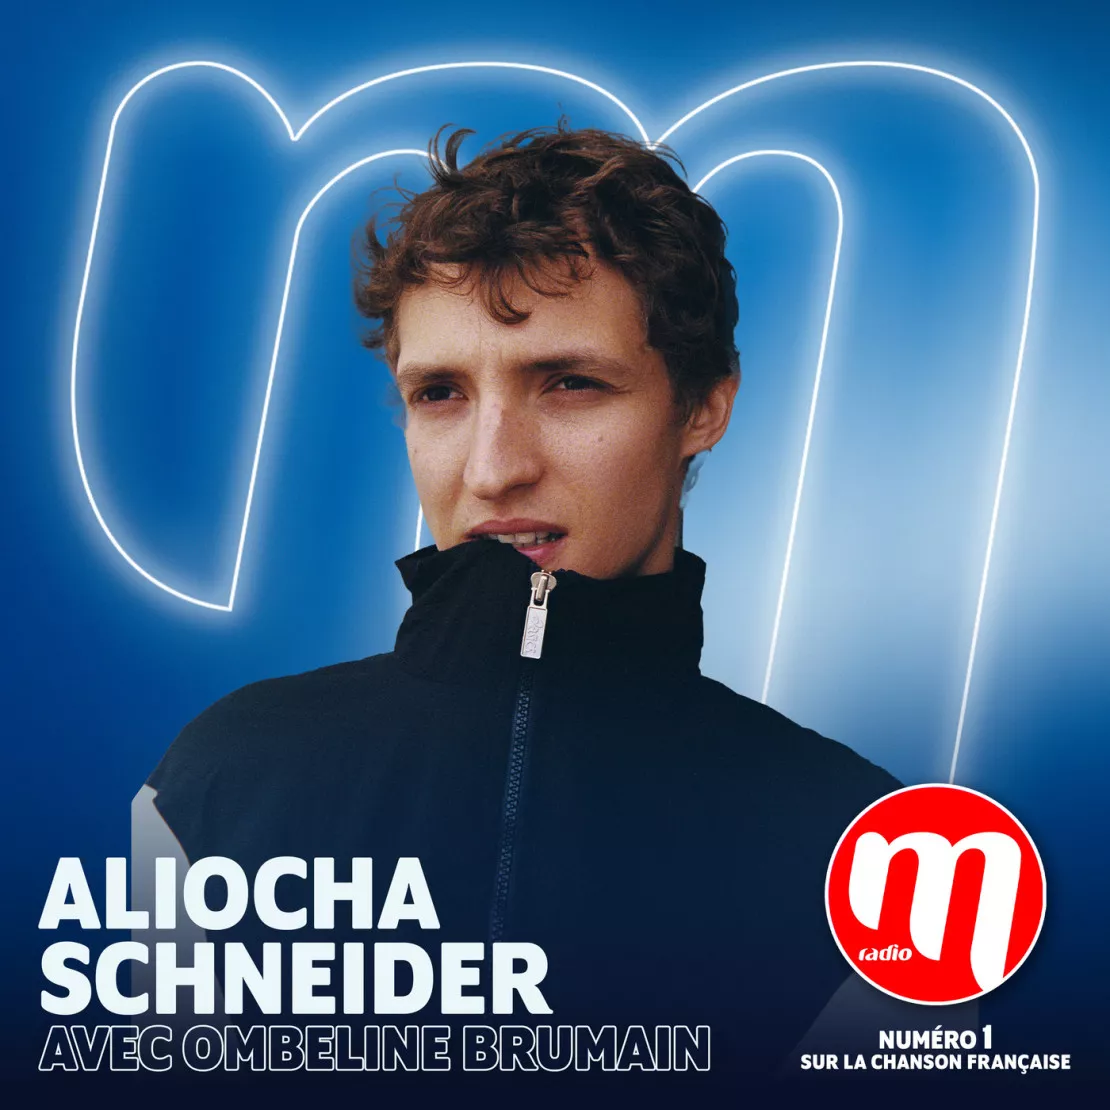 Aliocha Schneider